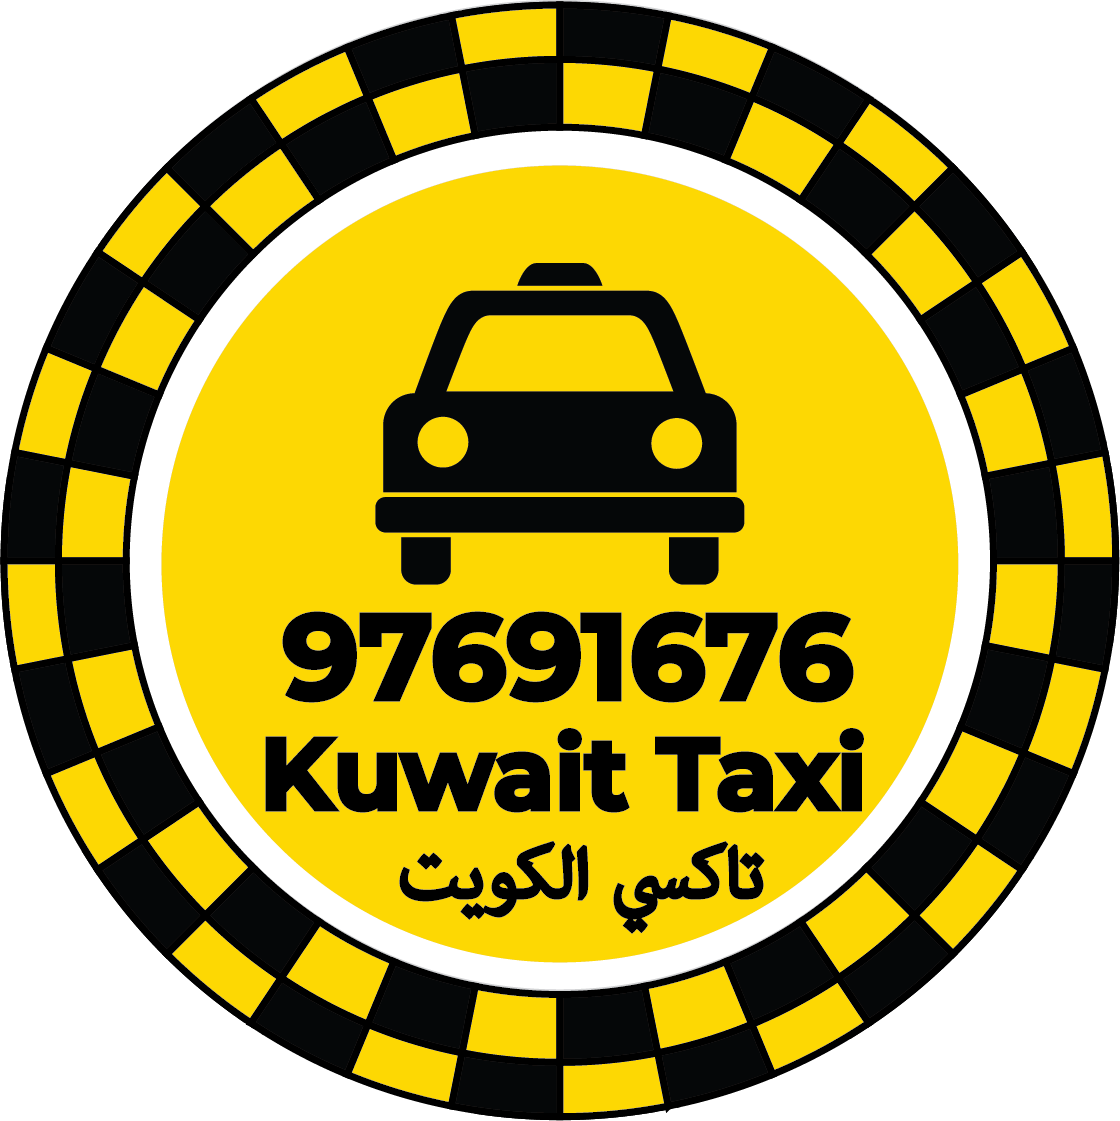 تاكسي الشويخ 97691676 – ارقام تاكسي في الشويخ